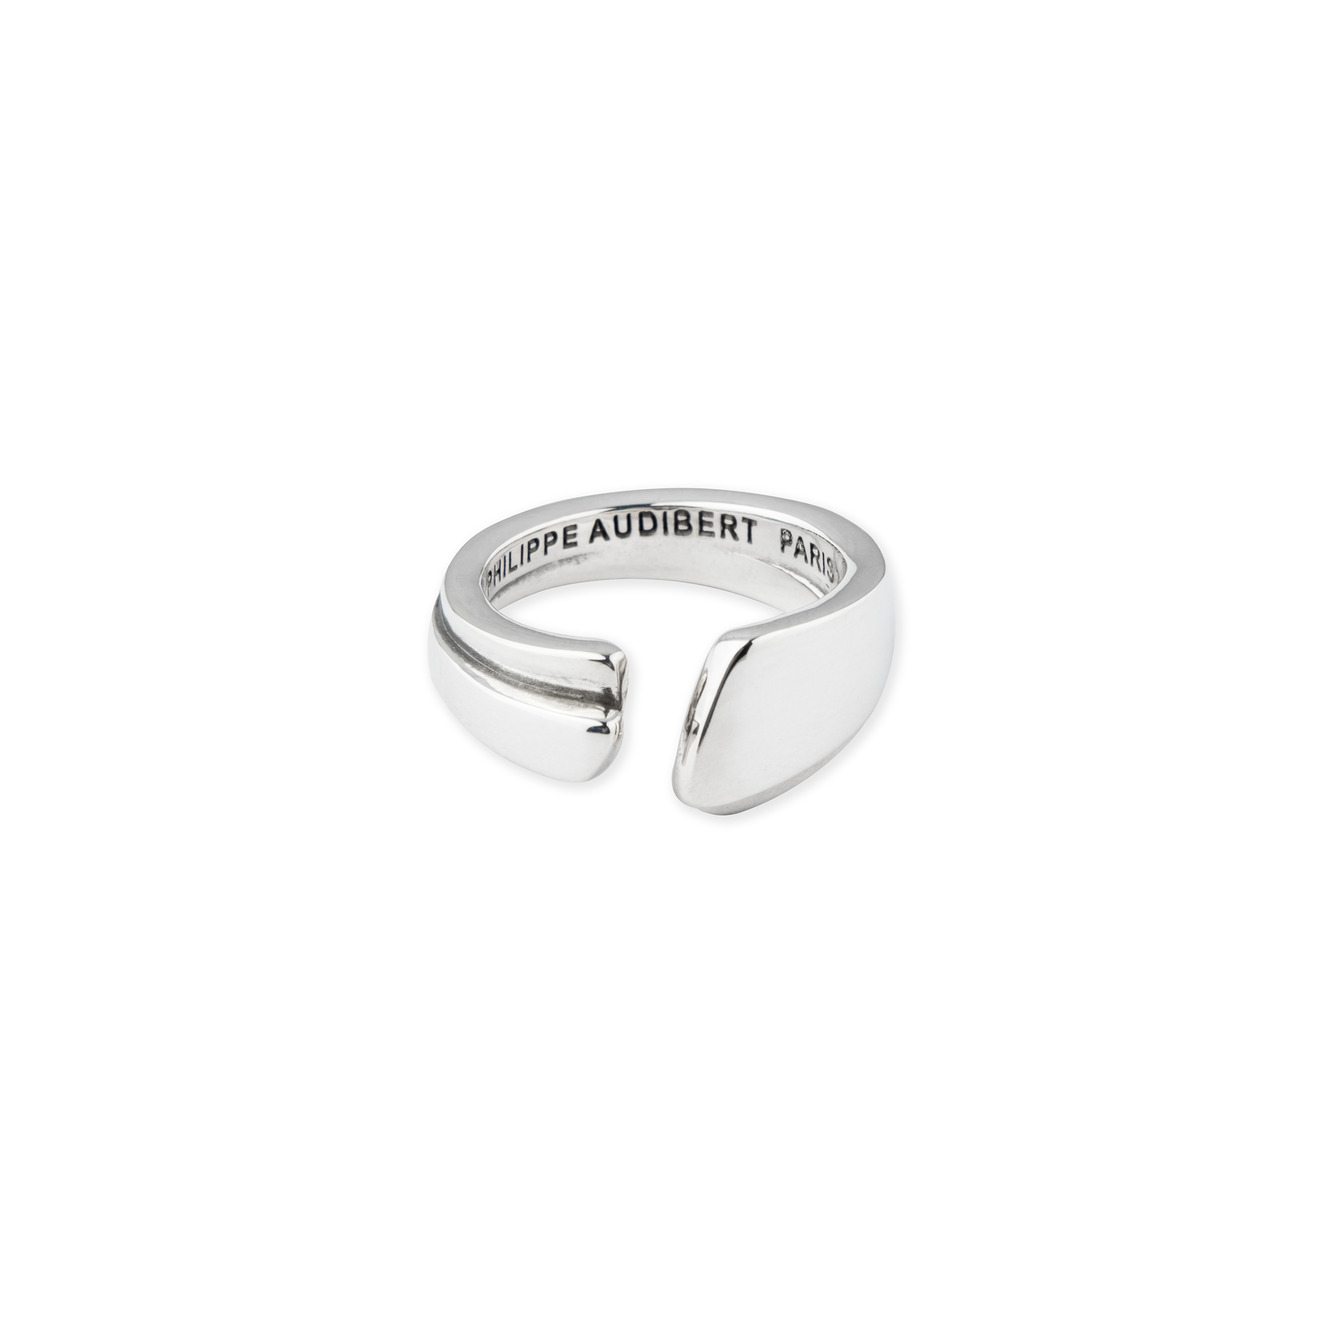 Philippe Audibert Кольцо Etena ring bress с серебряным покрытием philippe audibert кольцо neal ring с серебряным покрытием с черной эмалью